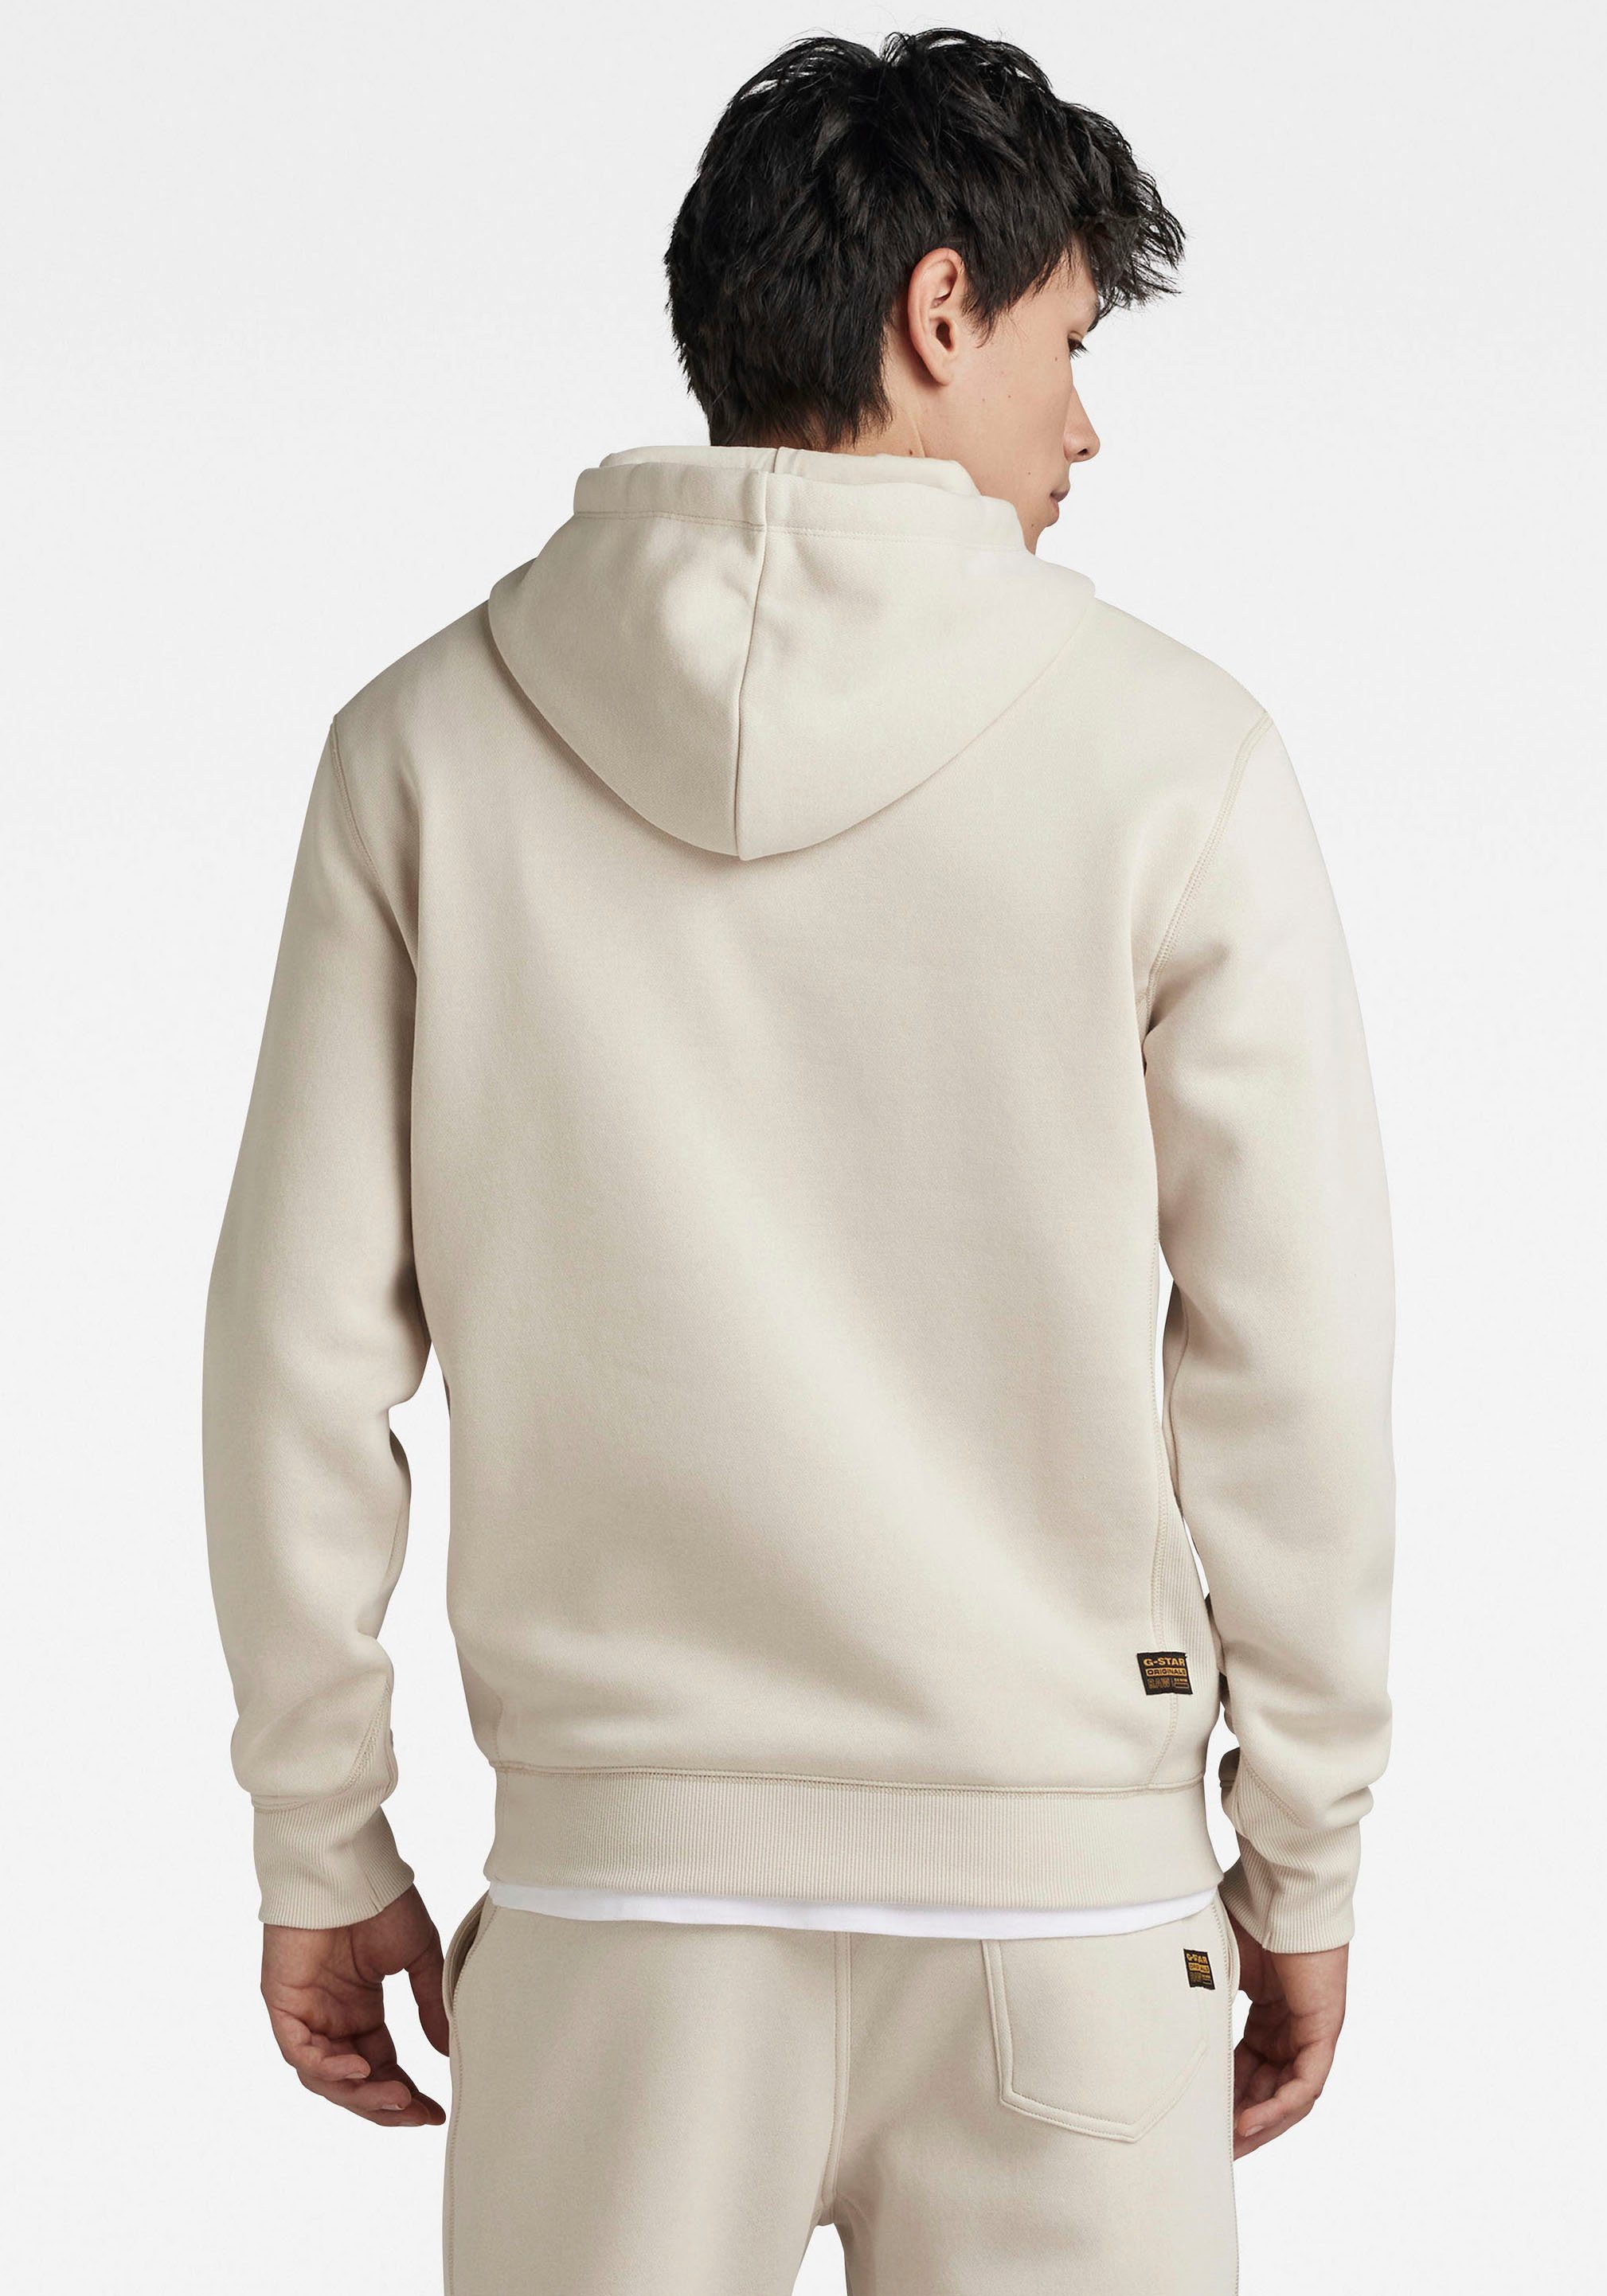 G-Star RAW Hoodie Premium hoodie